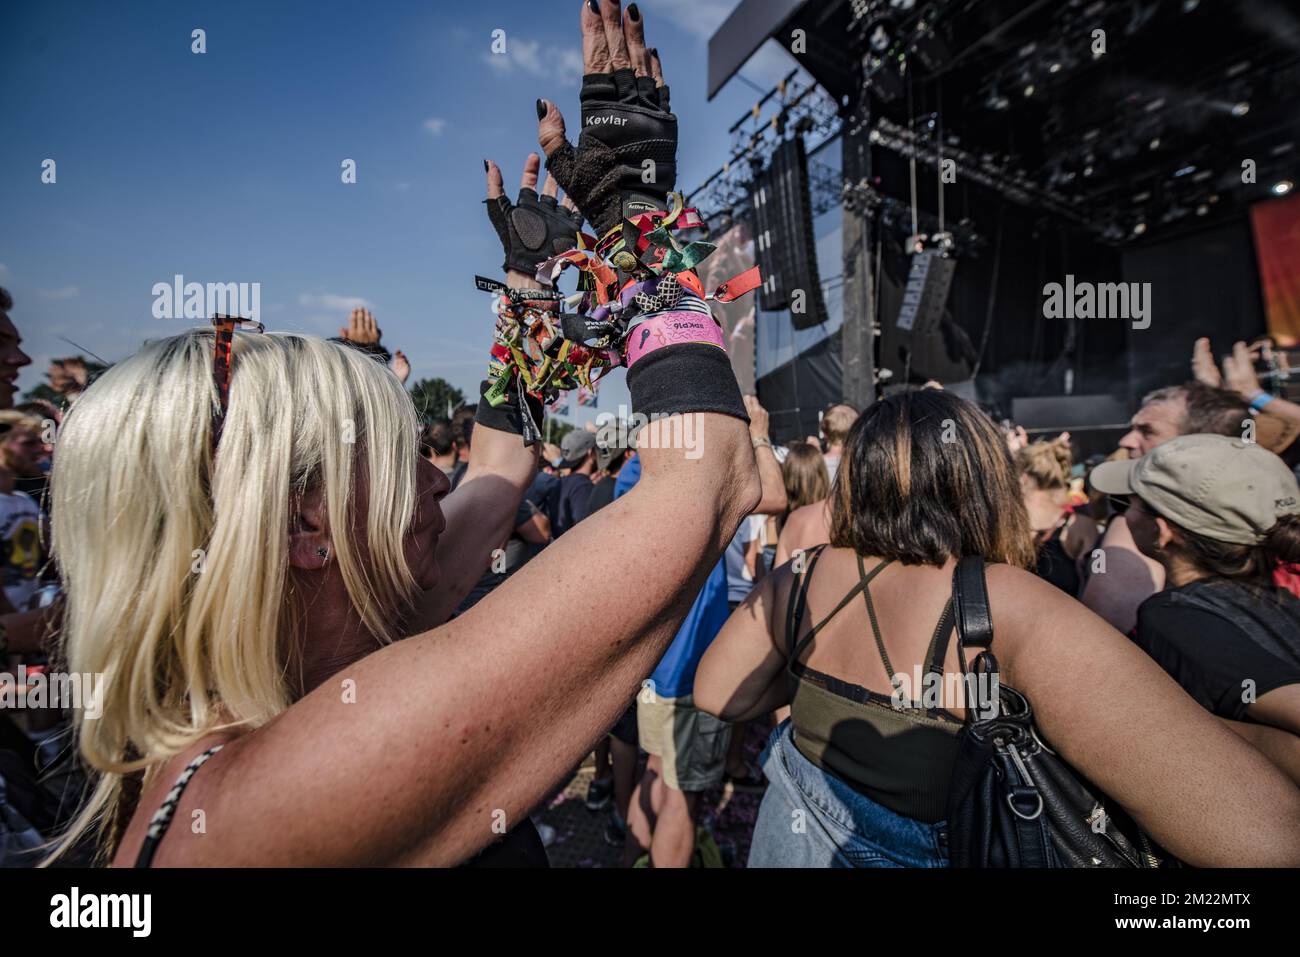 L'immagine mostra una donna di mezza età con un sacco di braccialetti ingresso festival durante il primo giorno del tre giorni di festival musicale Pukkelpop a Kiewit, Hasselt, Mercoledì 17 agosto 2016. Foto Stock